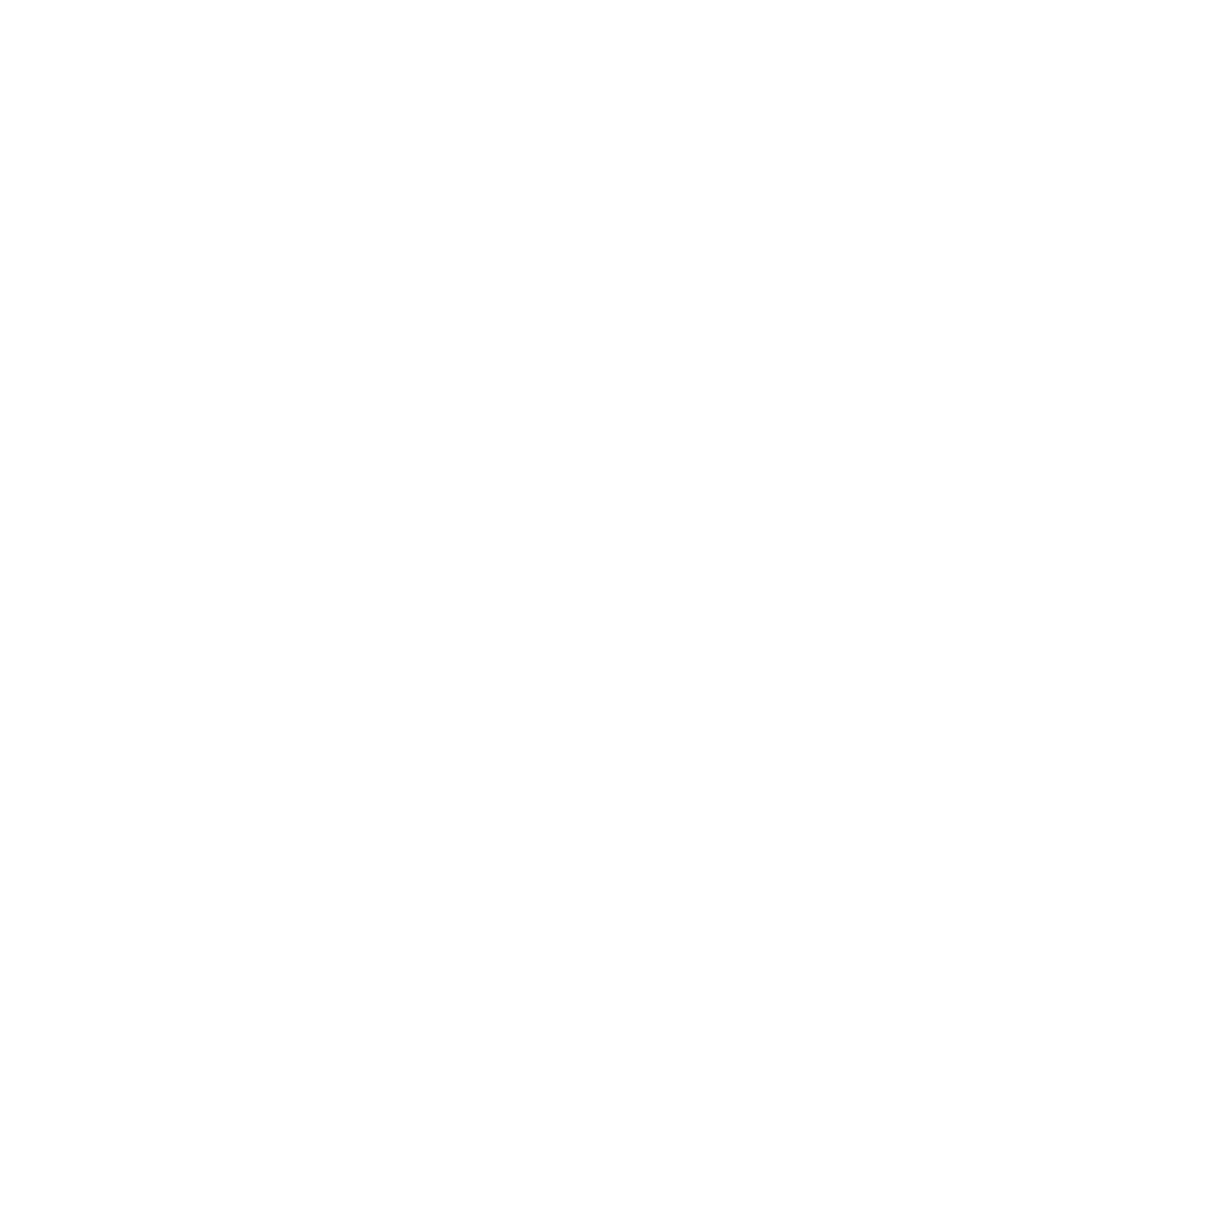 VR World's logo